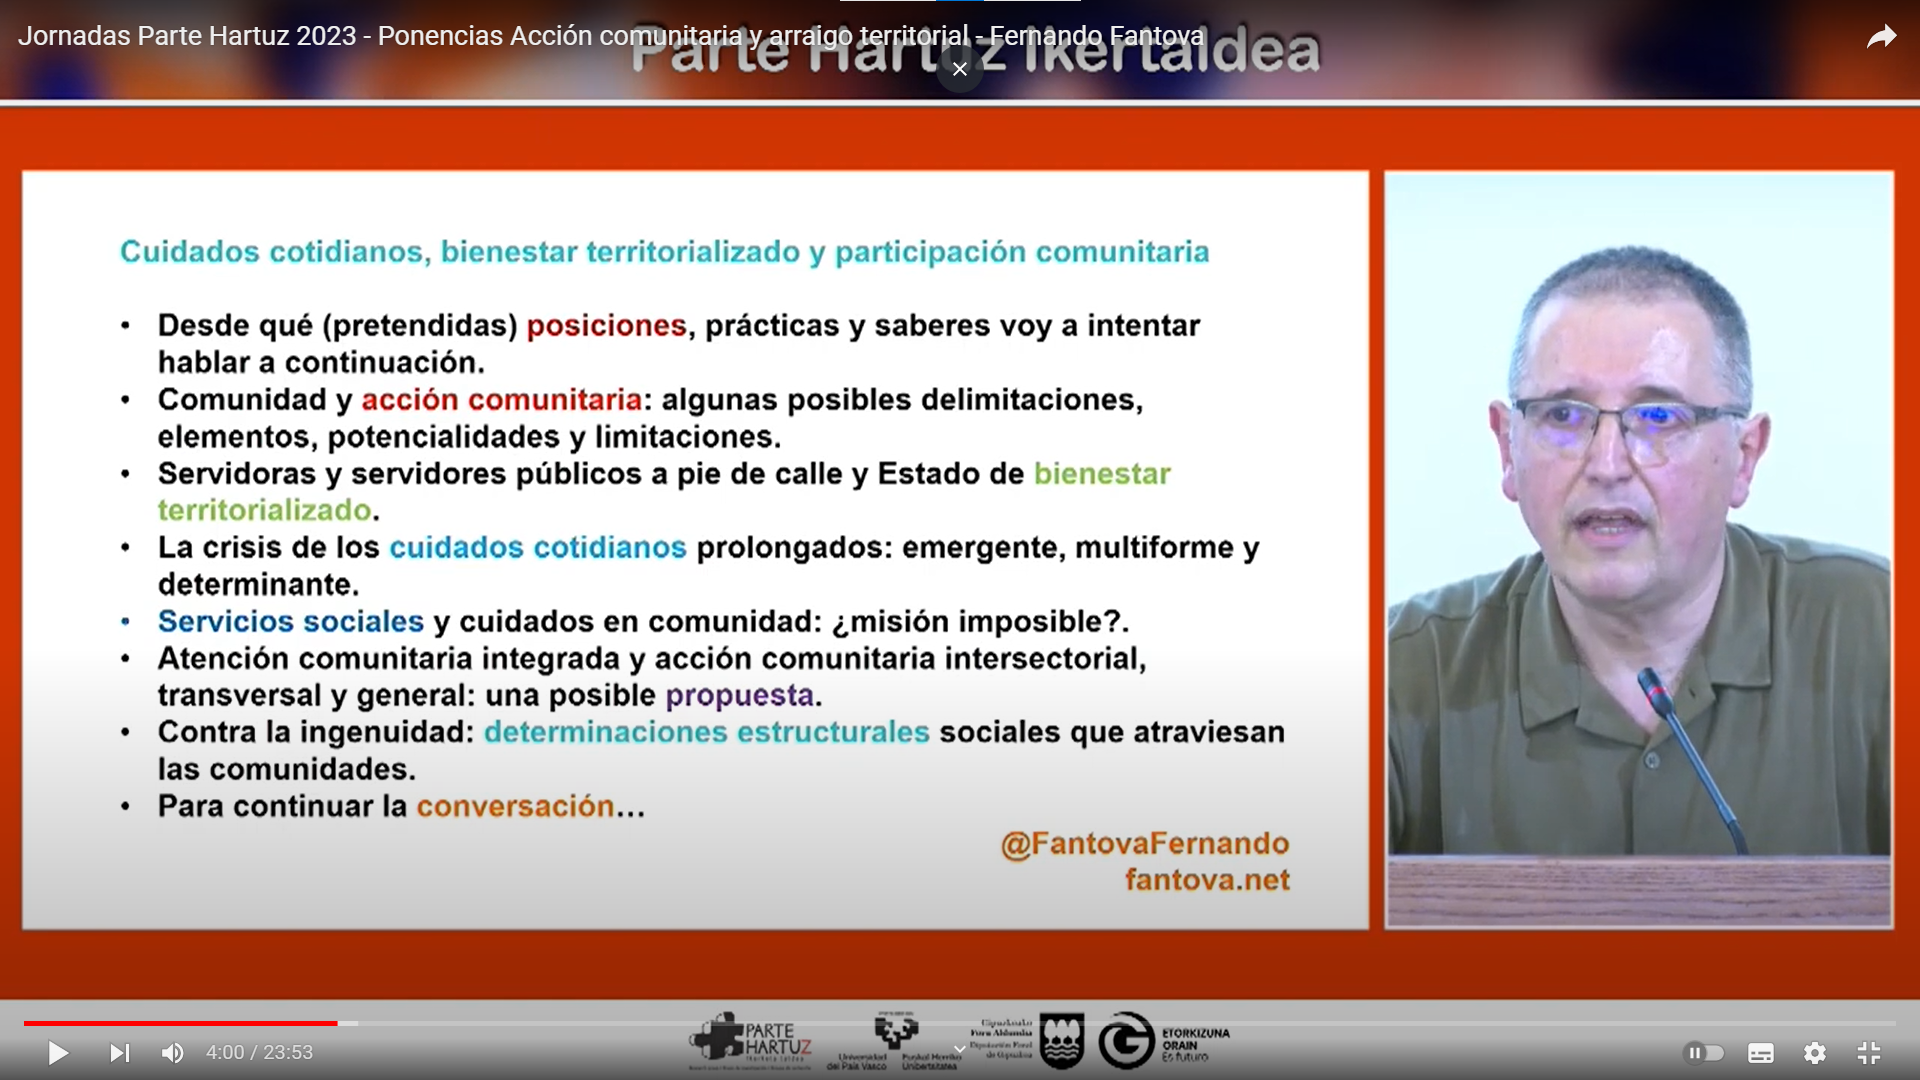 Acción comunitaria y arraigo territorial: Fernando Fantova (consultor)